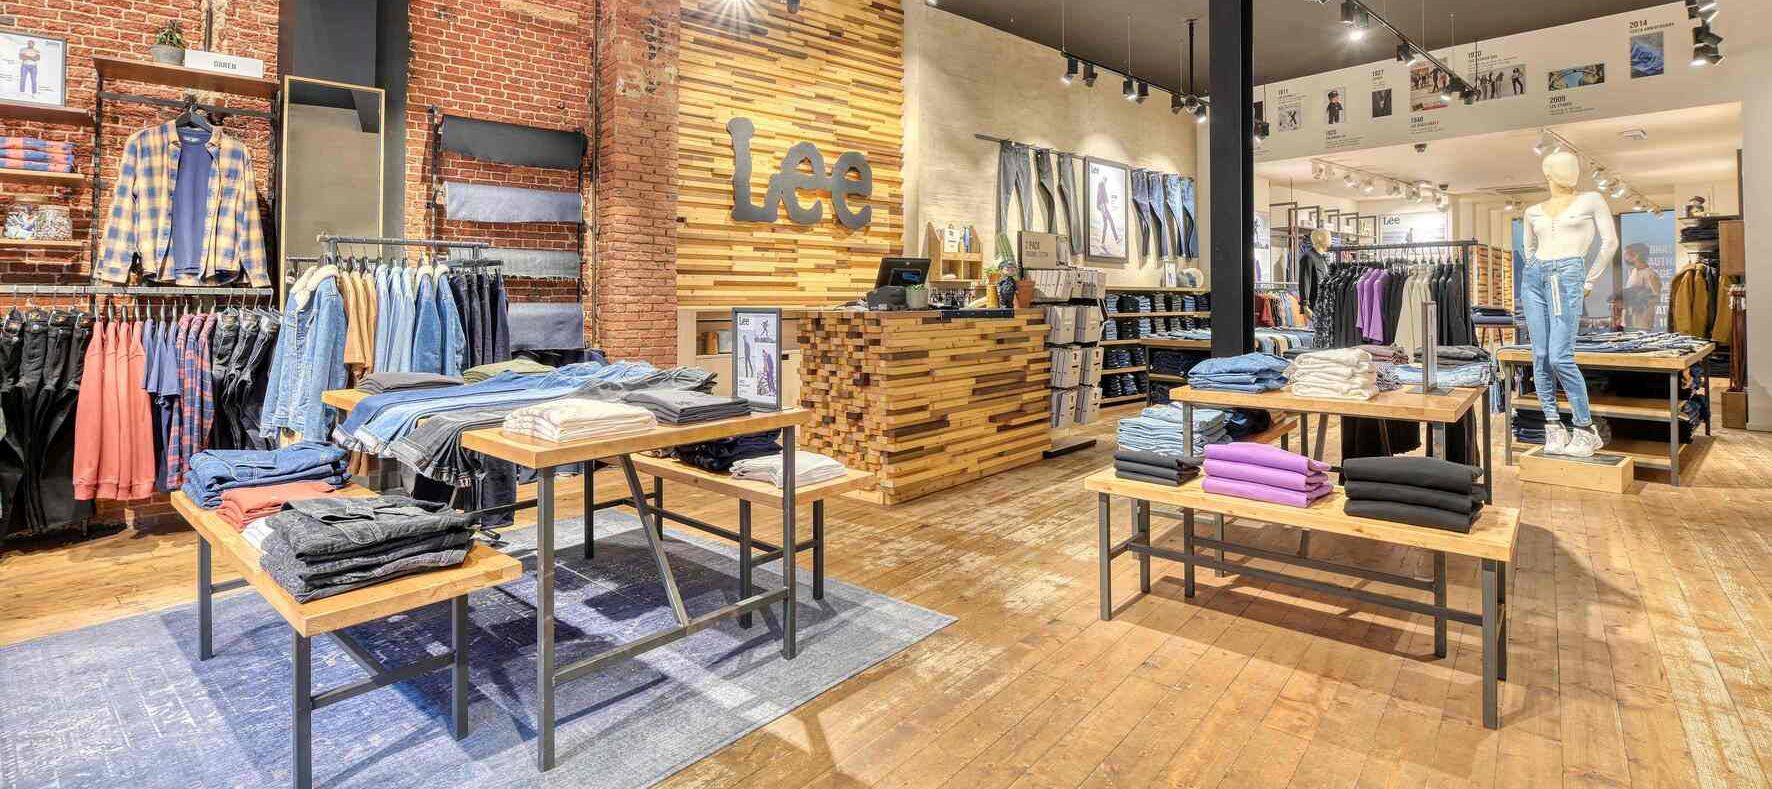 Lee Jeans otwiera swój pierwszy wirtualny sklep